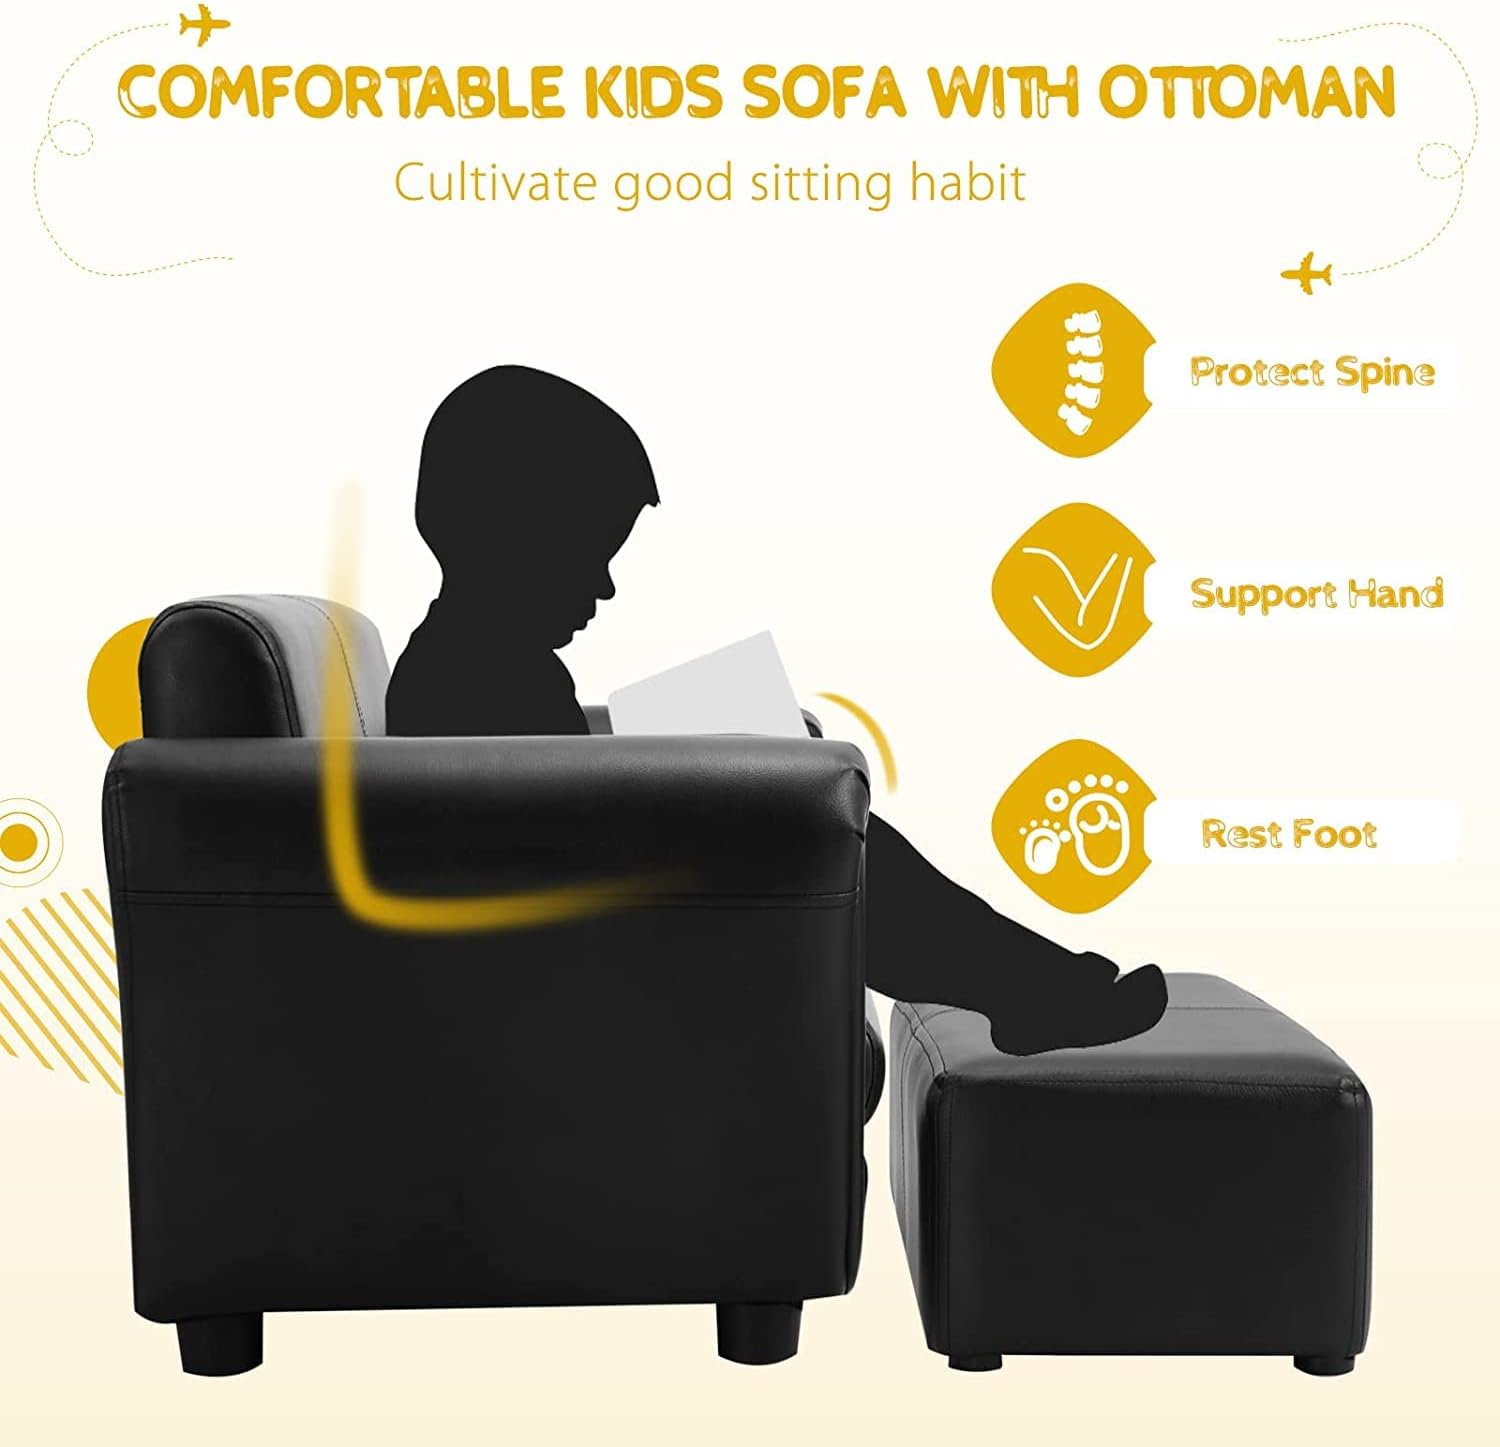 Sofá infantil con reposapiés, sofá biplaza tapizado para niños con otomana,  marco de madera resistente certificado ASTM y CPSIA, juego de 2 asientos